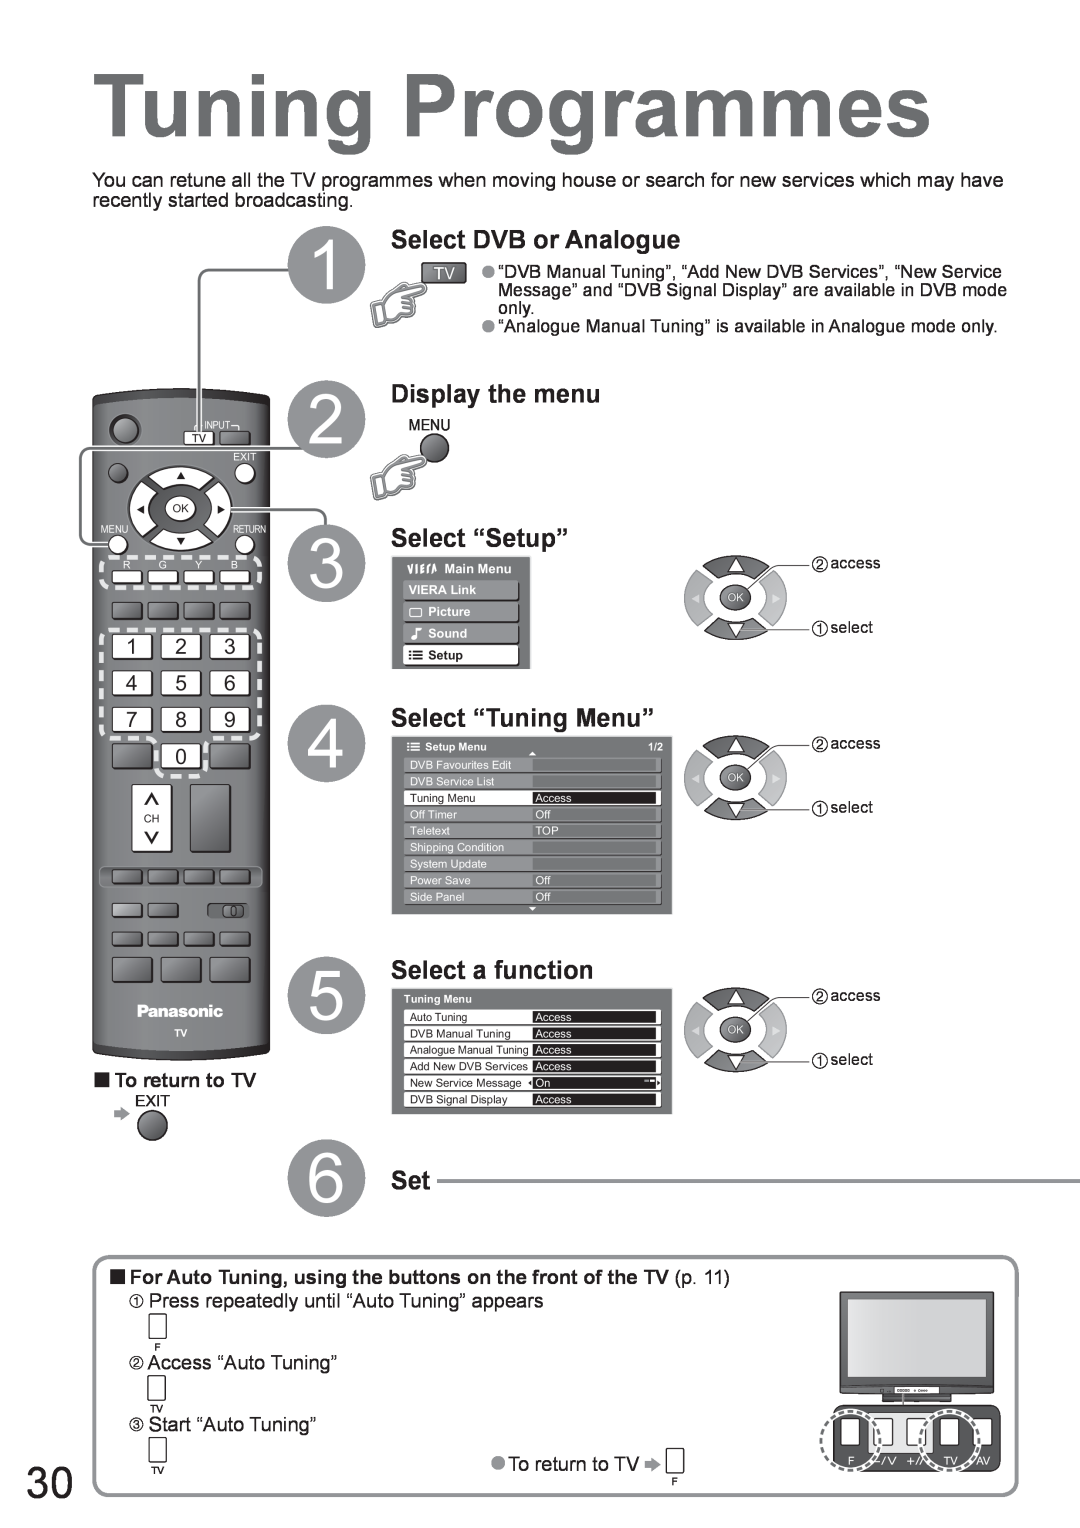 Panasonic TH-42PX8A Tuning Programmes, Select DVB or Analogue, Select “Tuning Menu”, Select a function, 6 Set, 1 2 4 5 7 8 